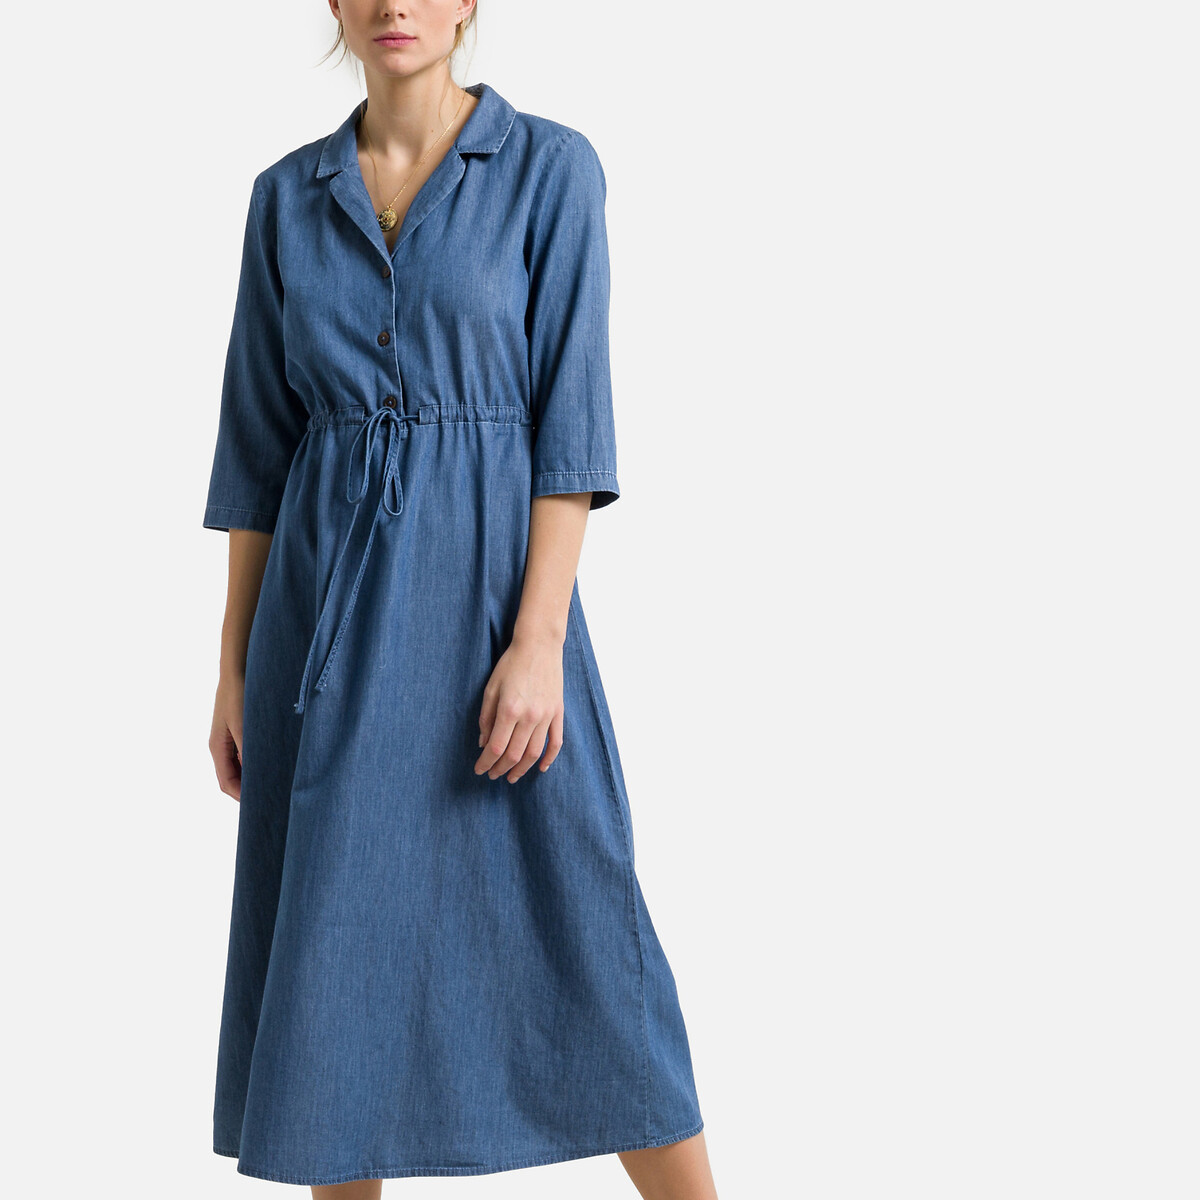 Платье JDY Расклешенное с рукавами 34 42 синий, размер 42 - фото 2